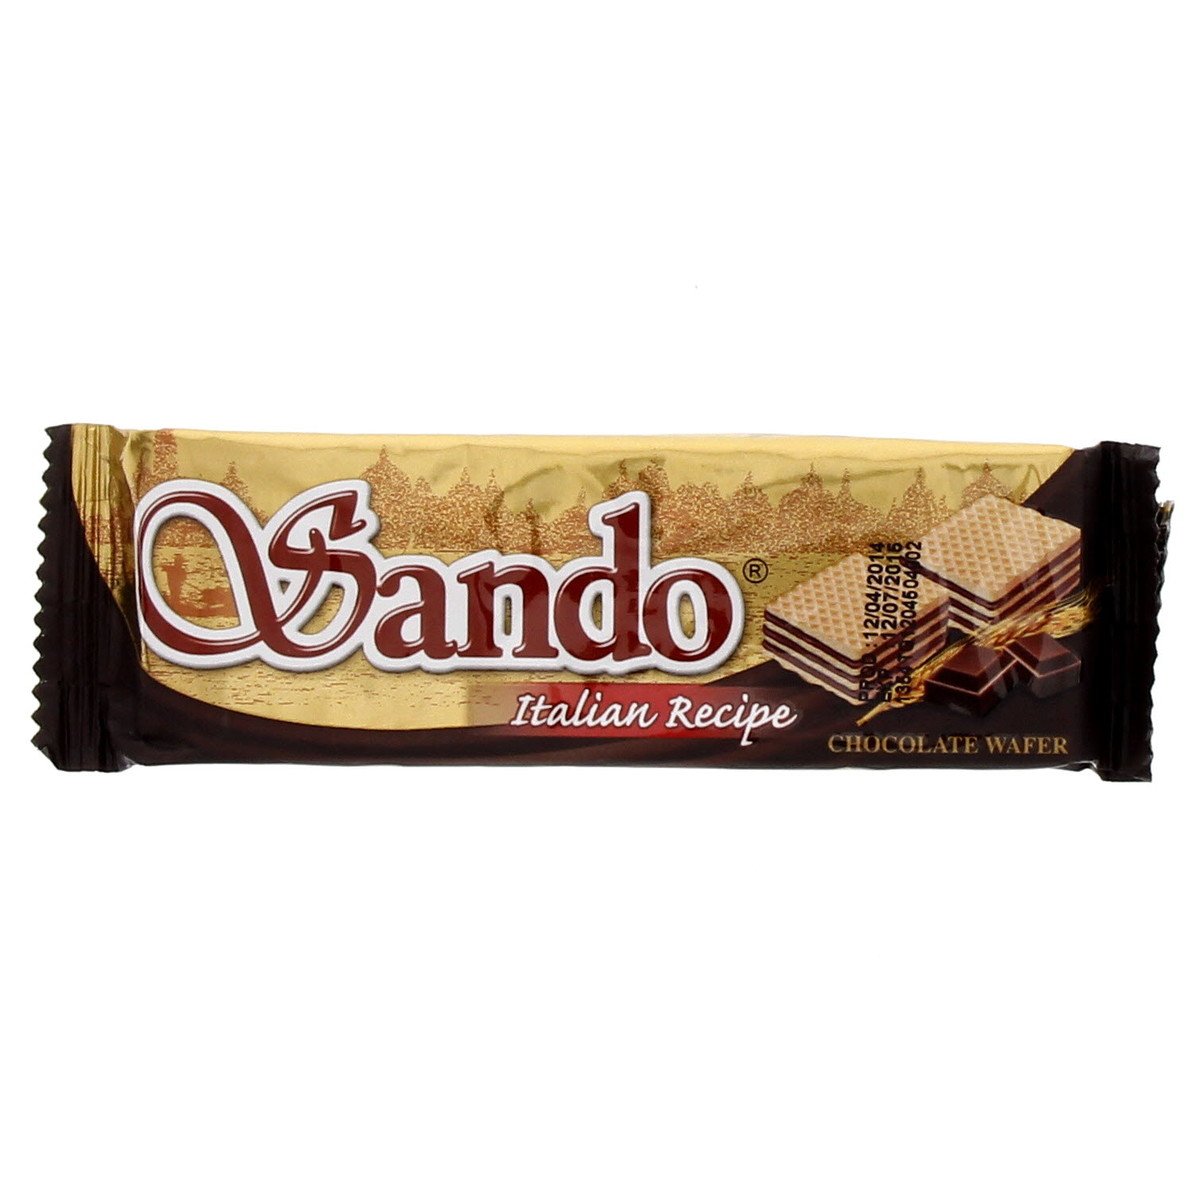  ساندو ويفر ايطالي بالشوكولاتة 32 جم × 24حبة